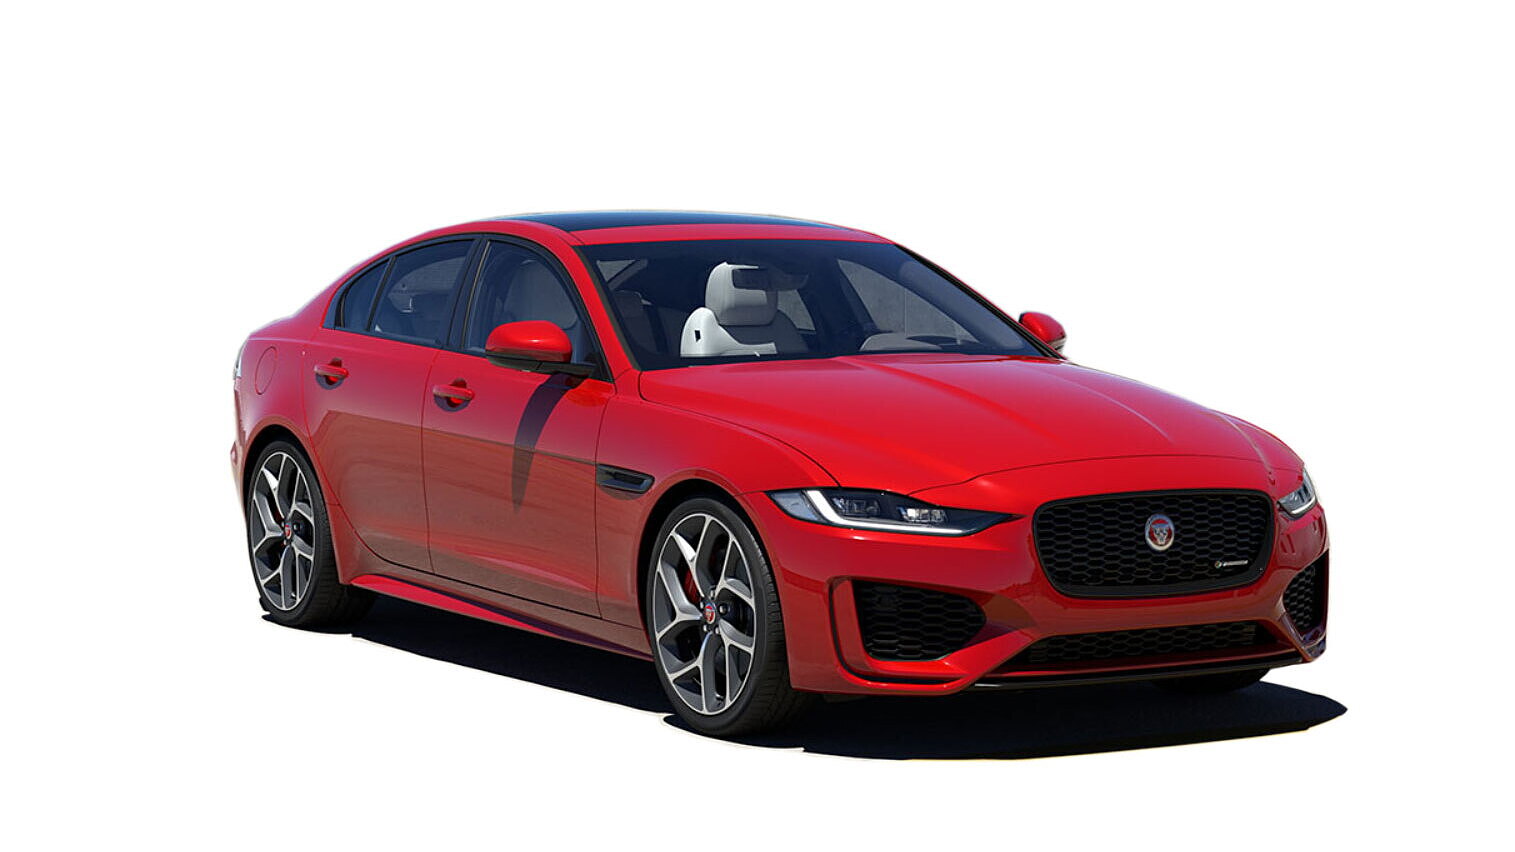 Discontinued Jaguar XE - Images, Colors & Reviews - CarWale